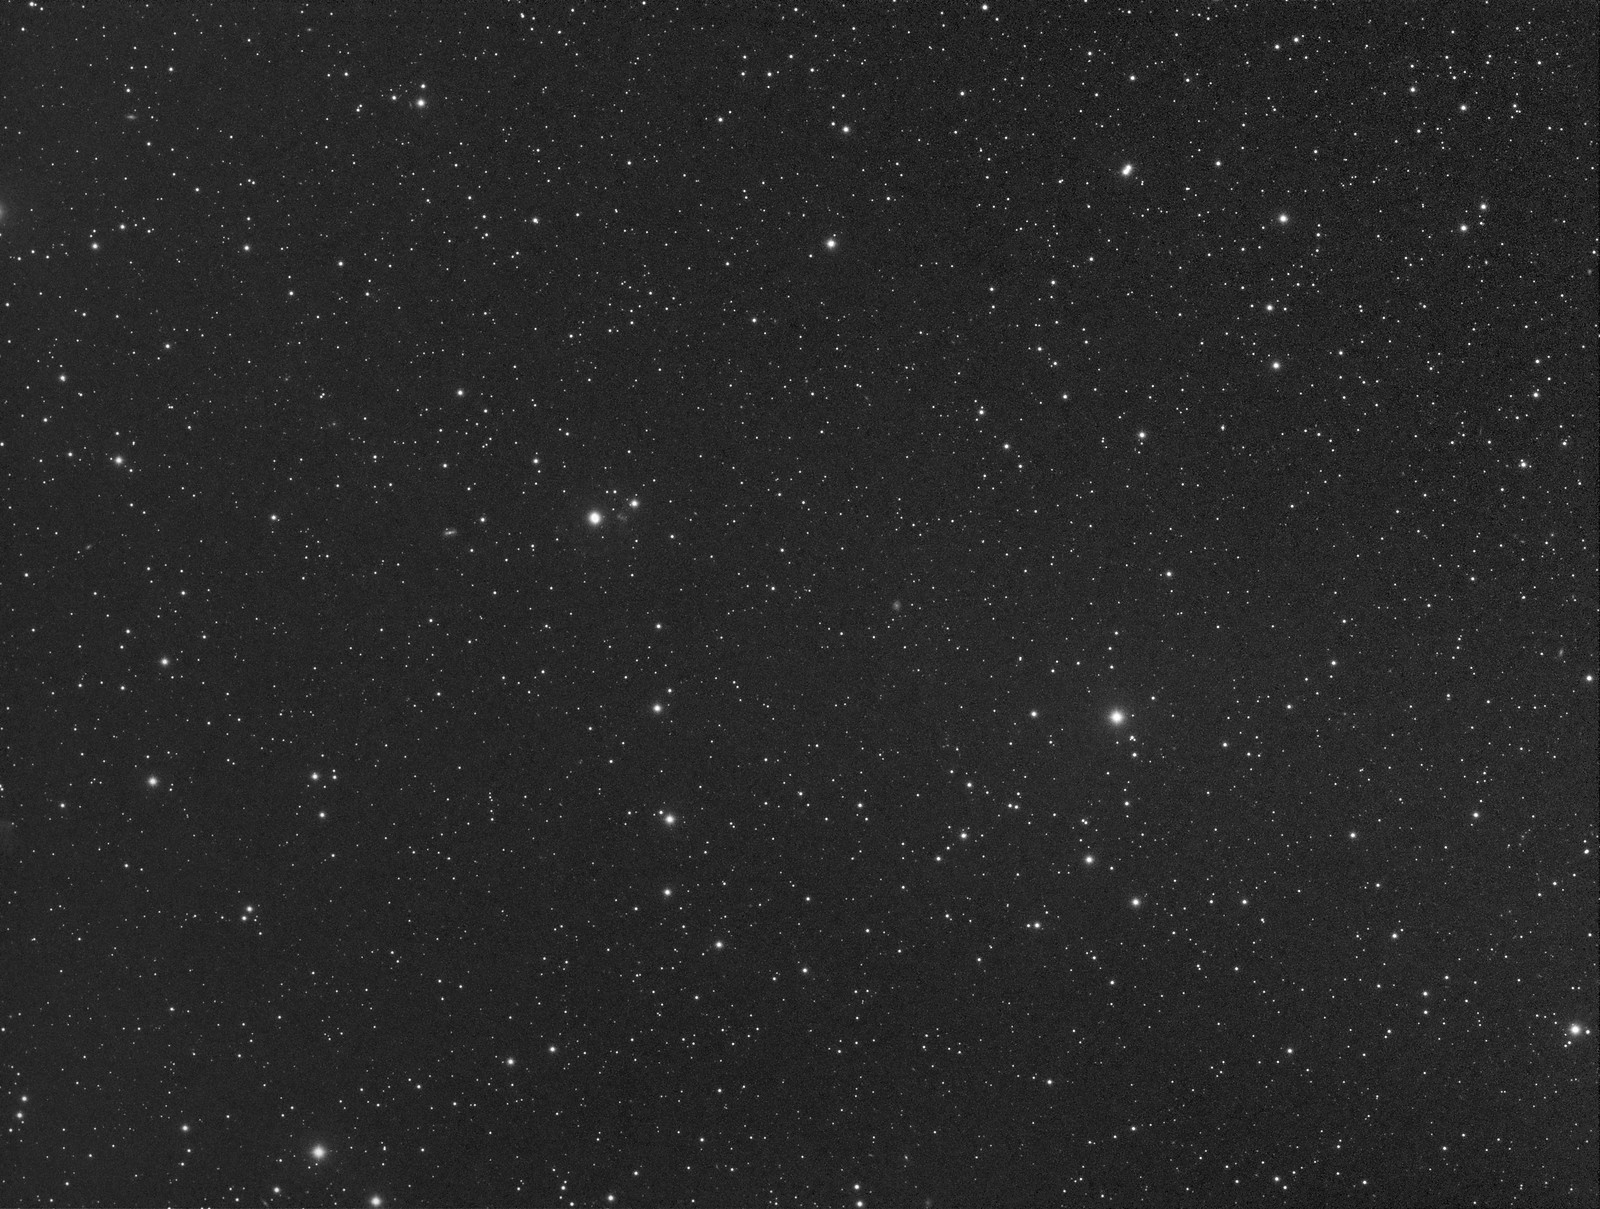 006 - NGC 6543 - Luminance